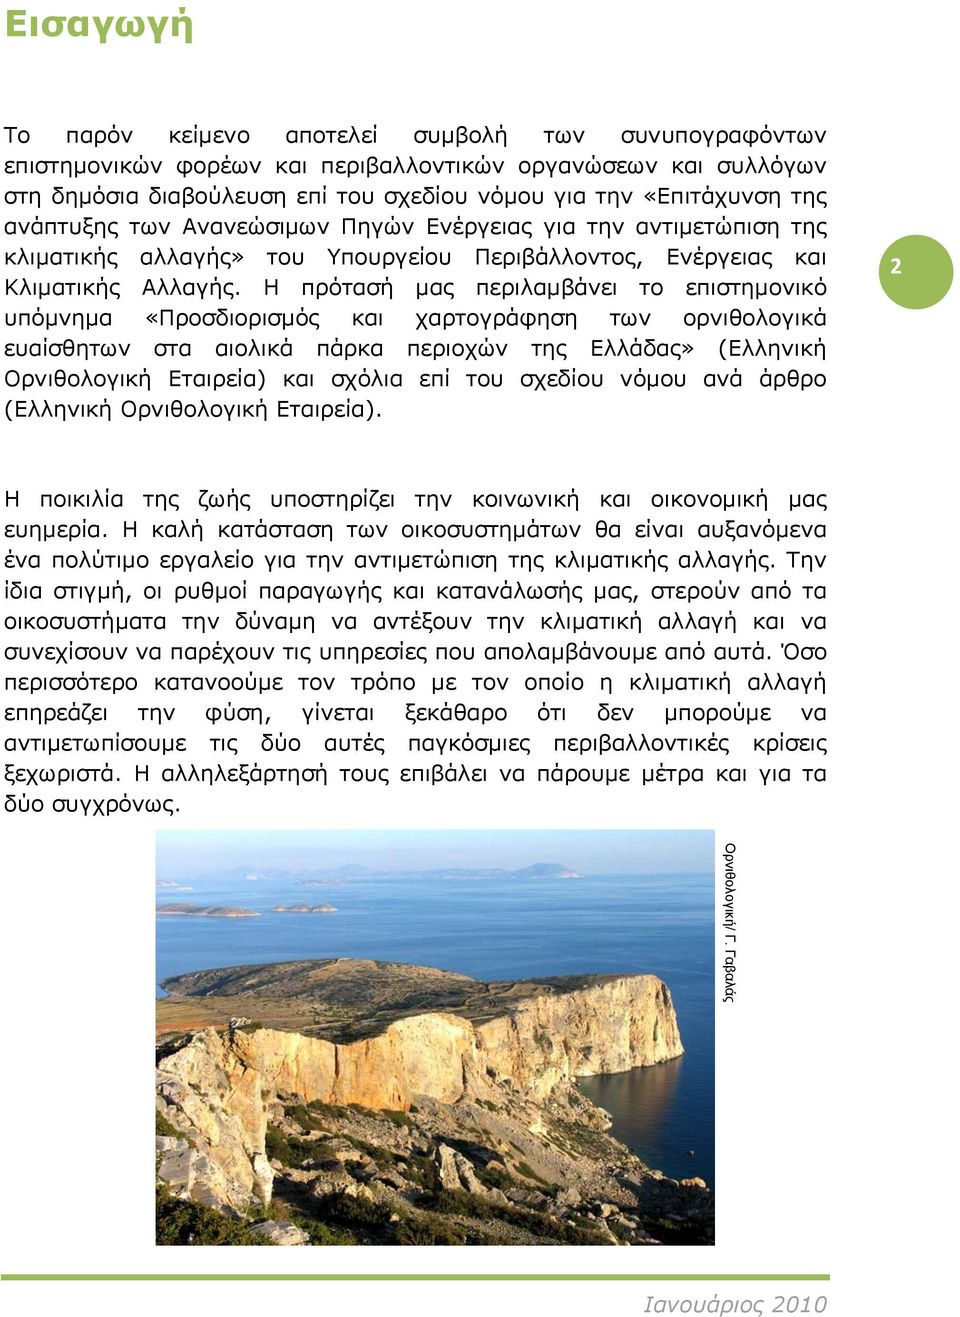 Η πρότασή μας περιλαμβάνει το επιστημονικό υπόμνημα «Προσδιορισμός και χαρτογράφηση των ορνιθολογικά ευαίσθητων στα αιολικά πάρκα περιοχών της Ελλάδας» (Ελληνική Ορνιθολογική Εταιρεία) και σχόλια επί